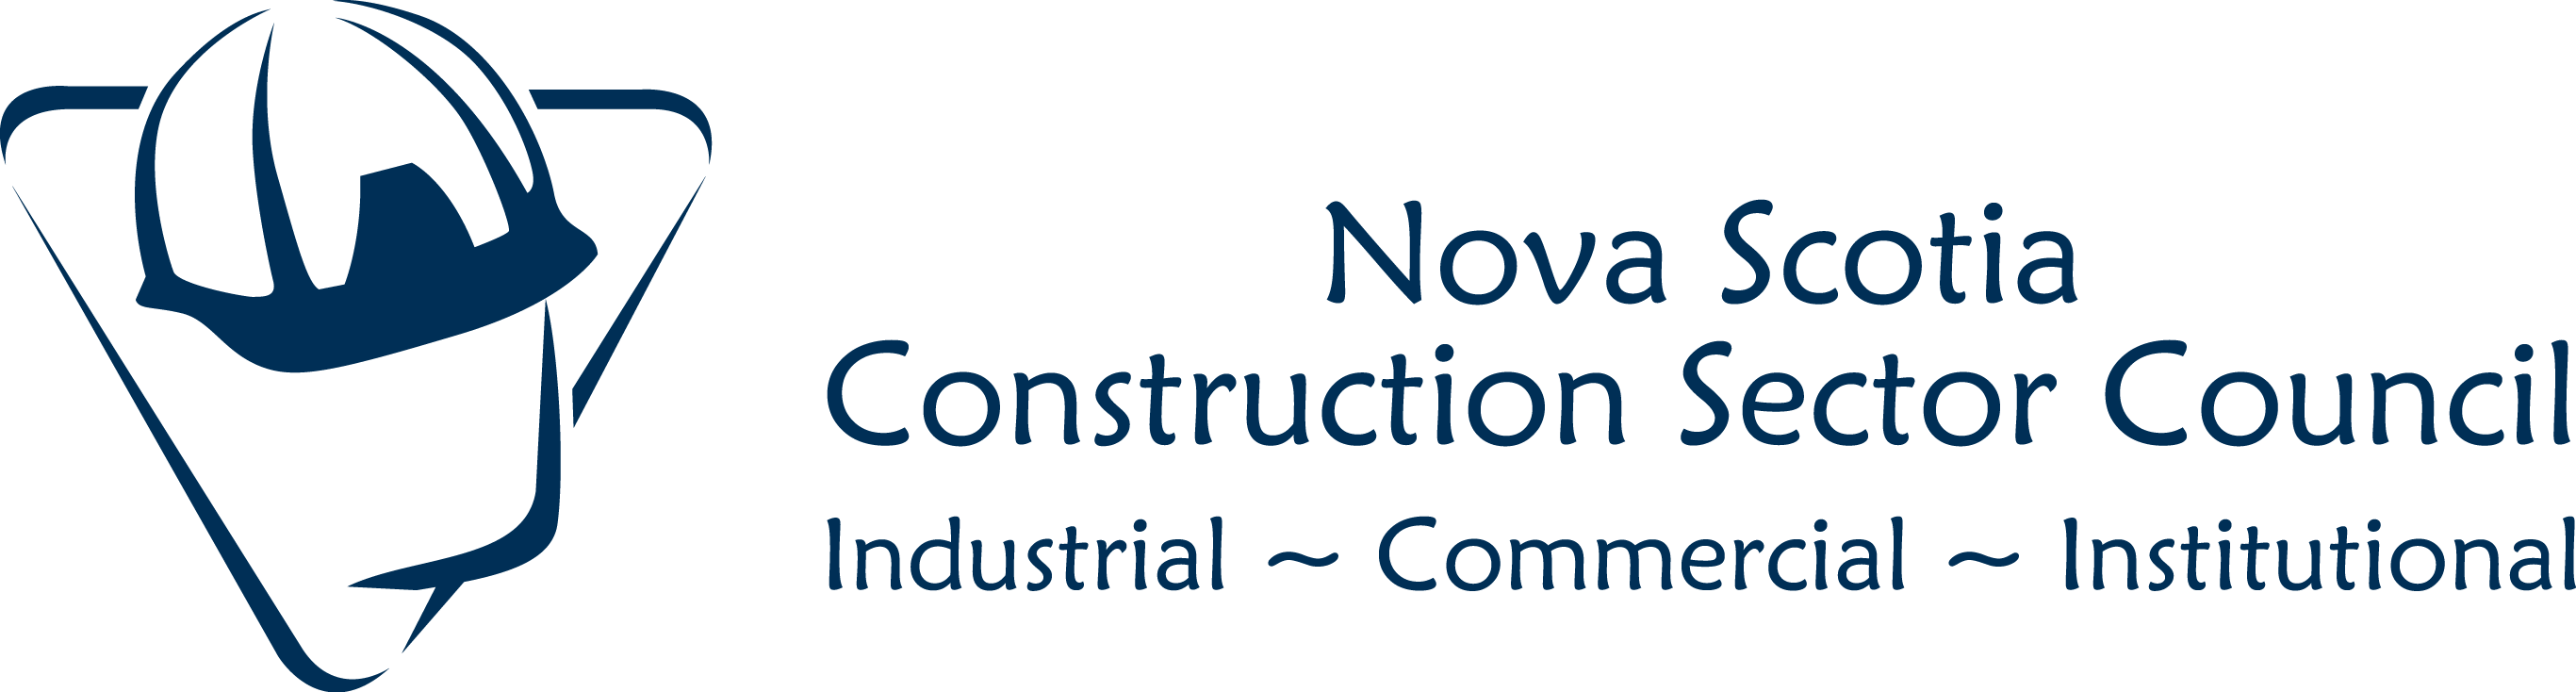 Logo Image for Nova Scotia Construction Sector Council